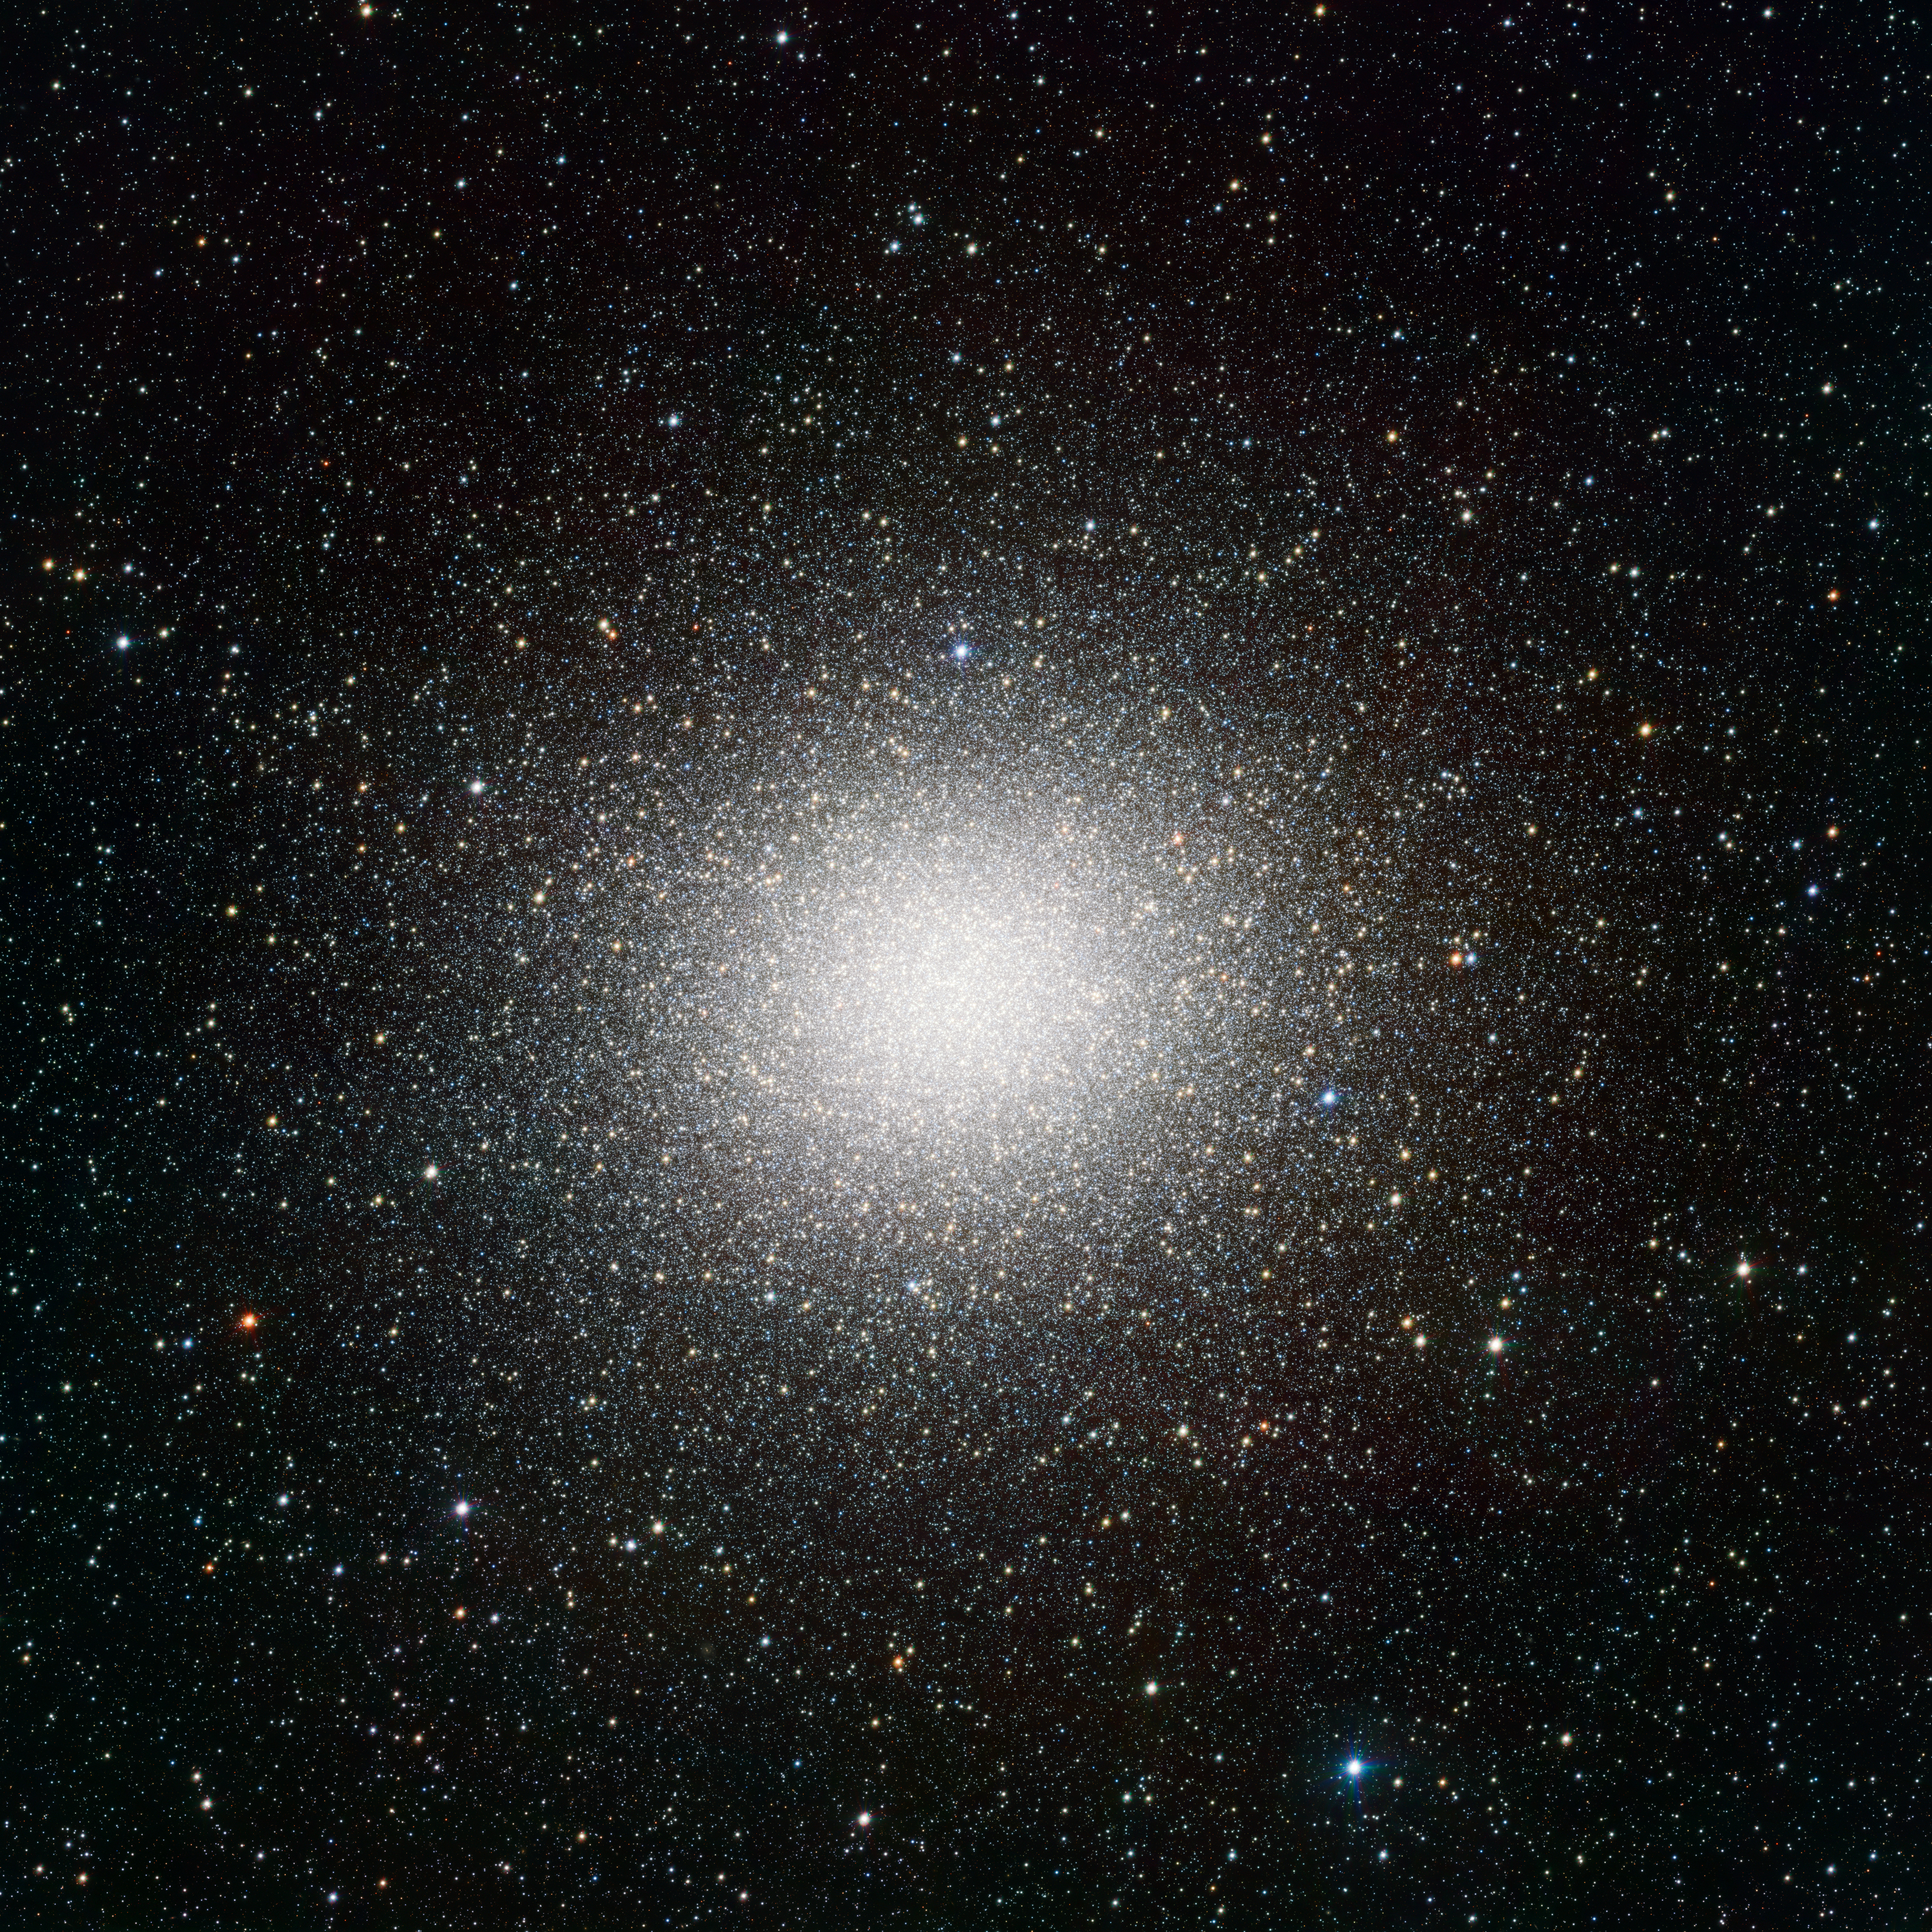 VST image of the giant globular cluster Omega Centauri